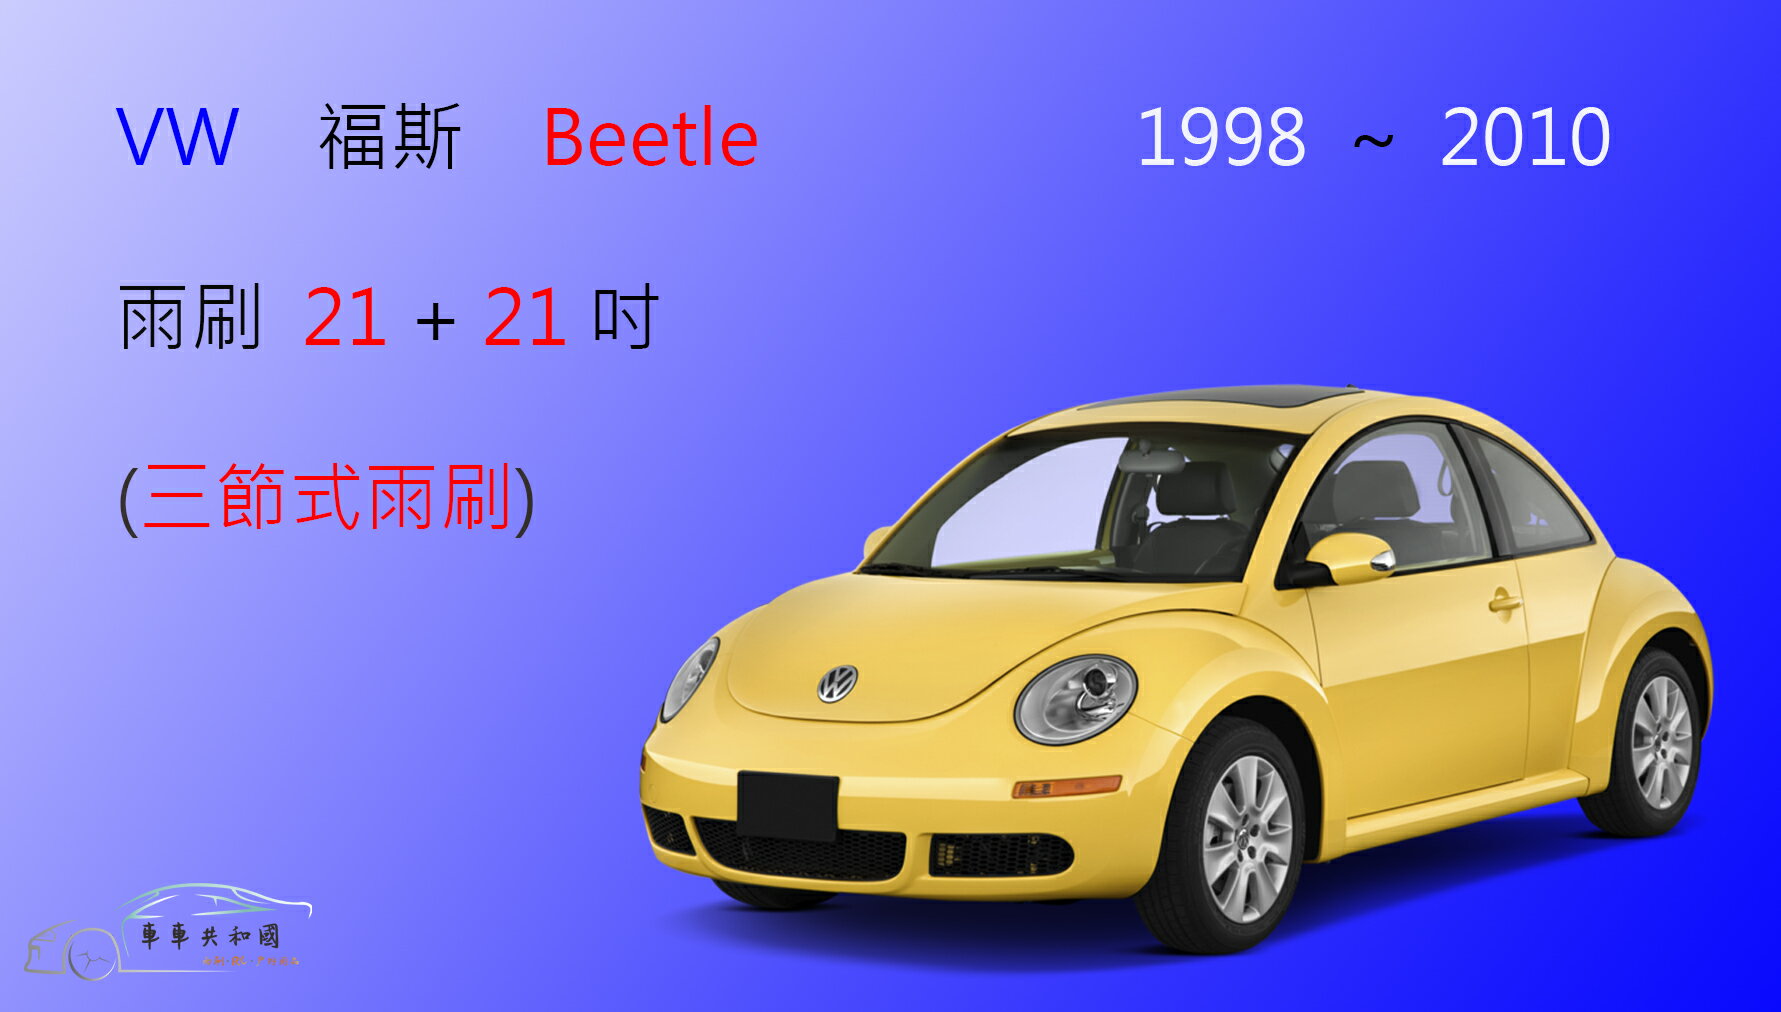 【車車共和國】VW 福斯 Beetle 金龜車 1998~2010 三節式雨刷 雨刷膠條 可換膠條式雨刷 雨刷錠